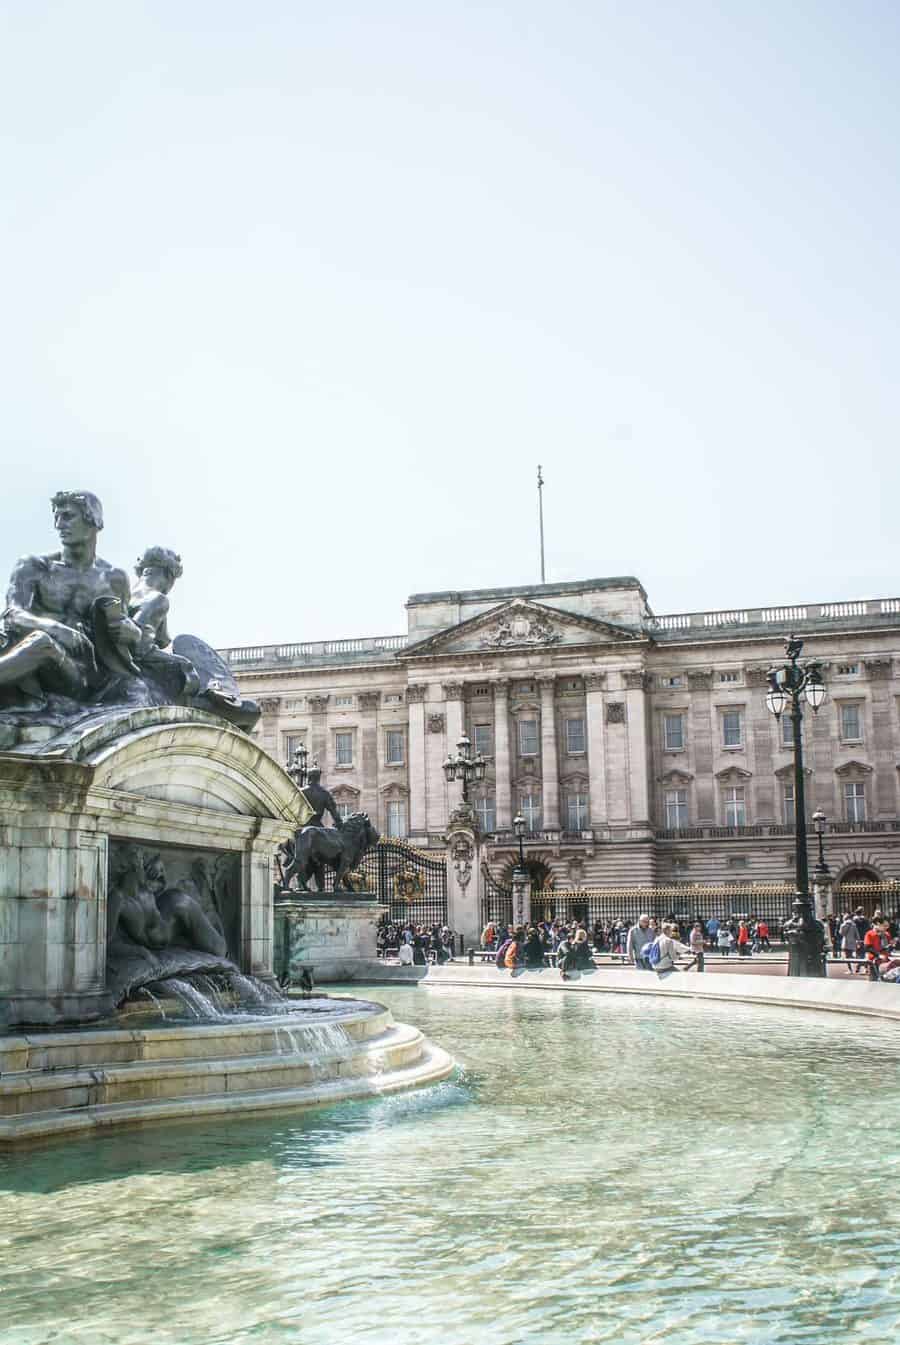 Buckingham Palace